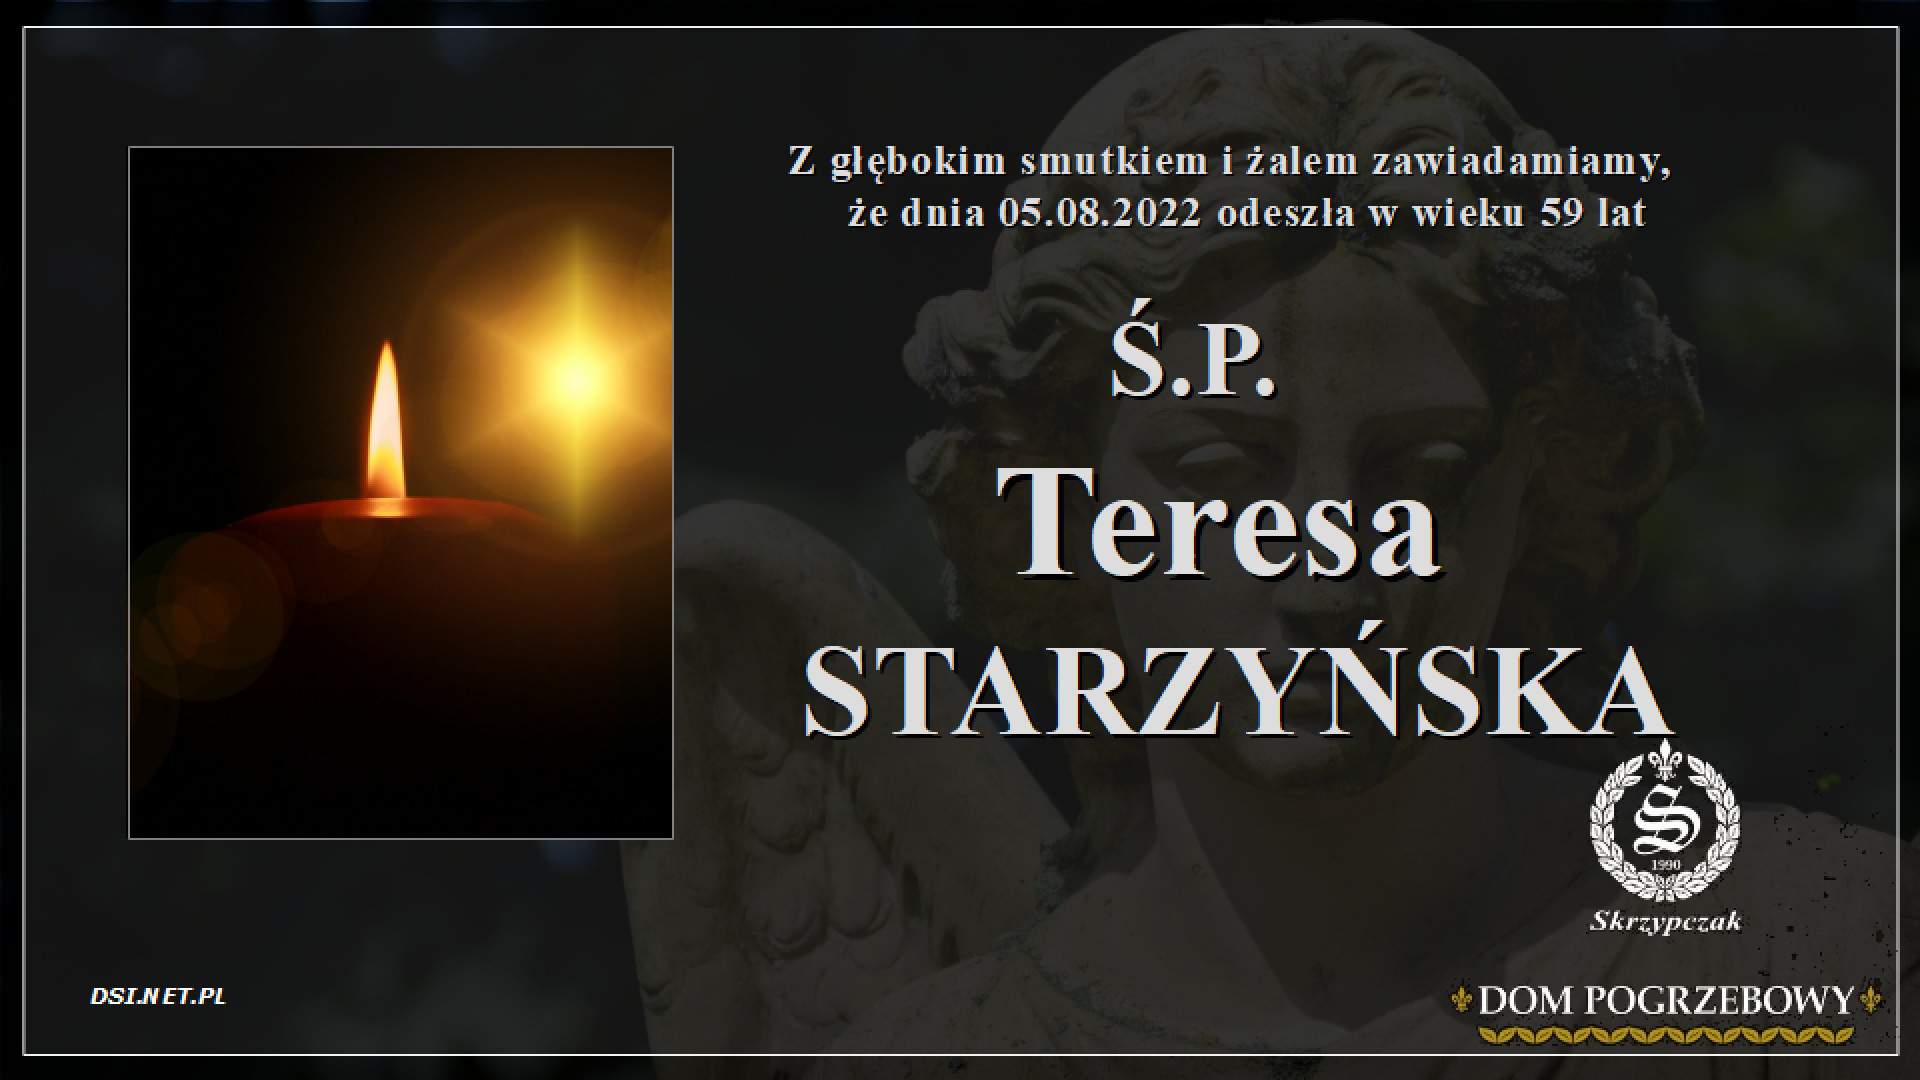 Ś.P. Teresa Starzyńska